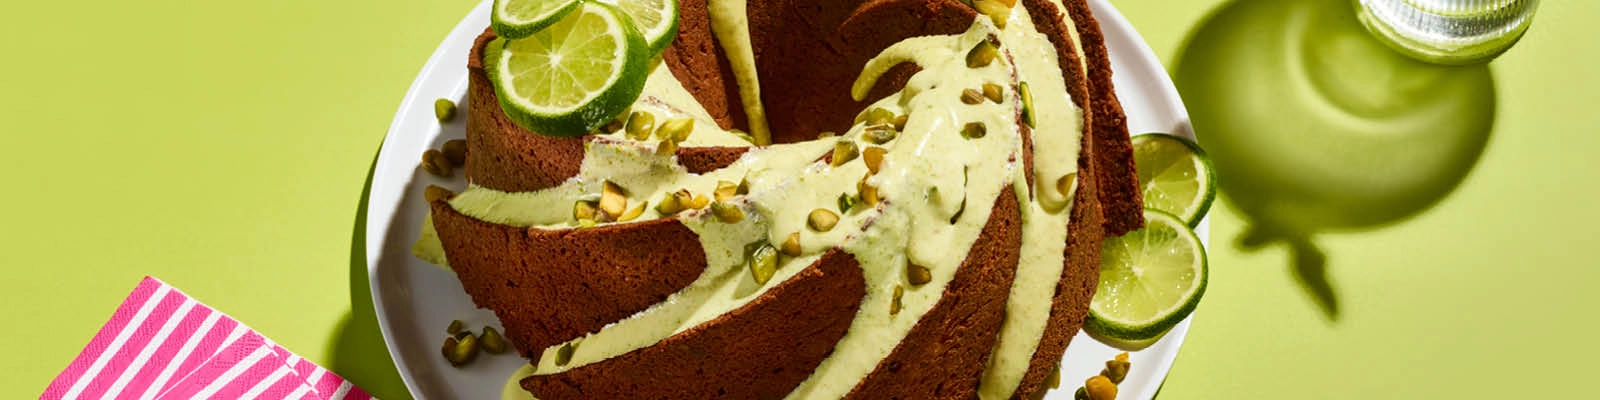 Pistachio-Lime Pound Cake with Pistachio Cream